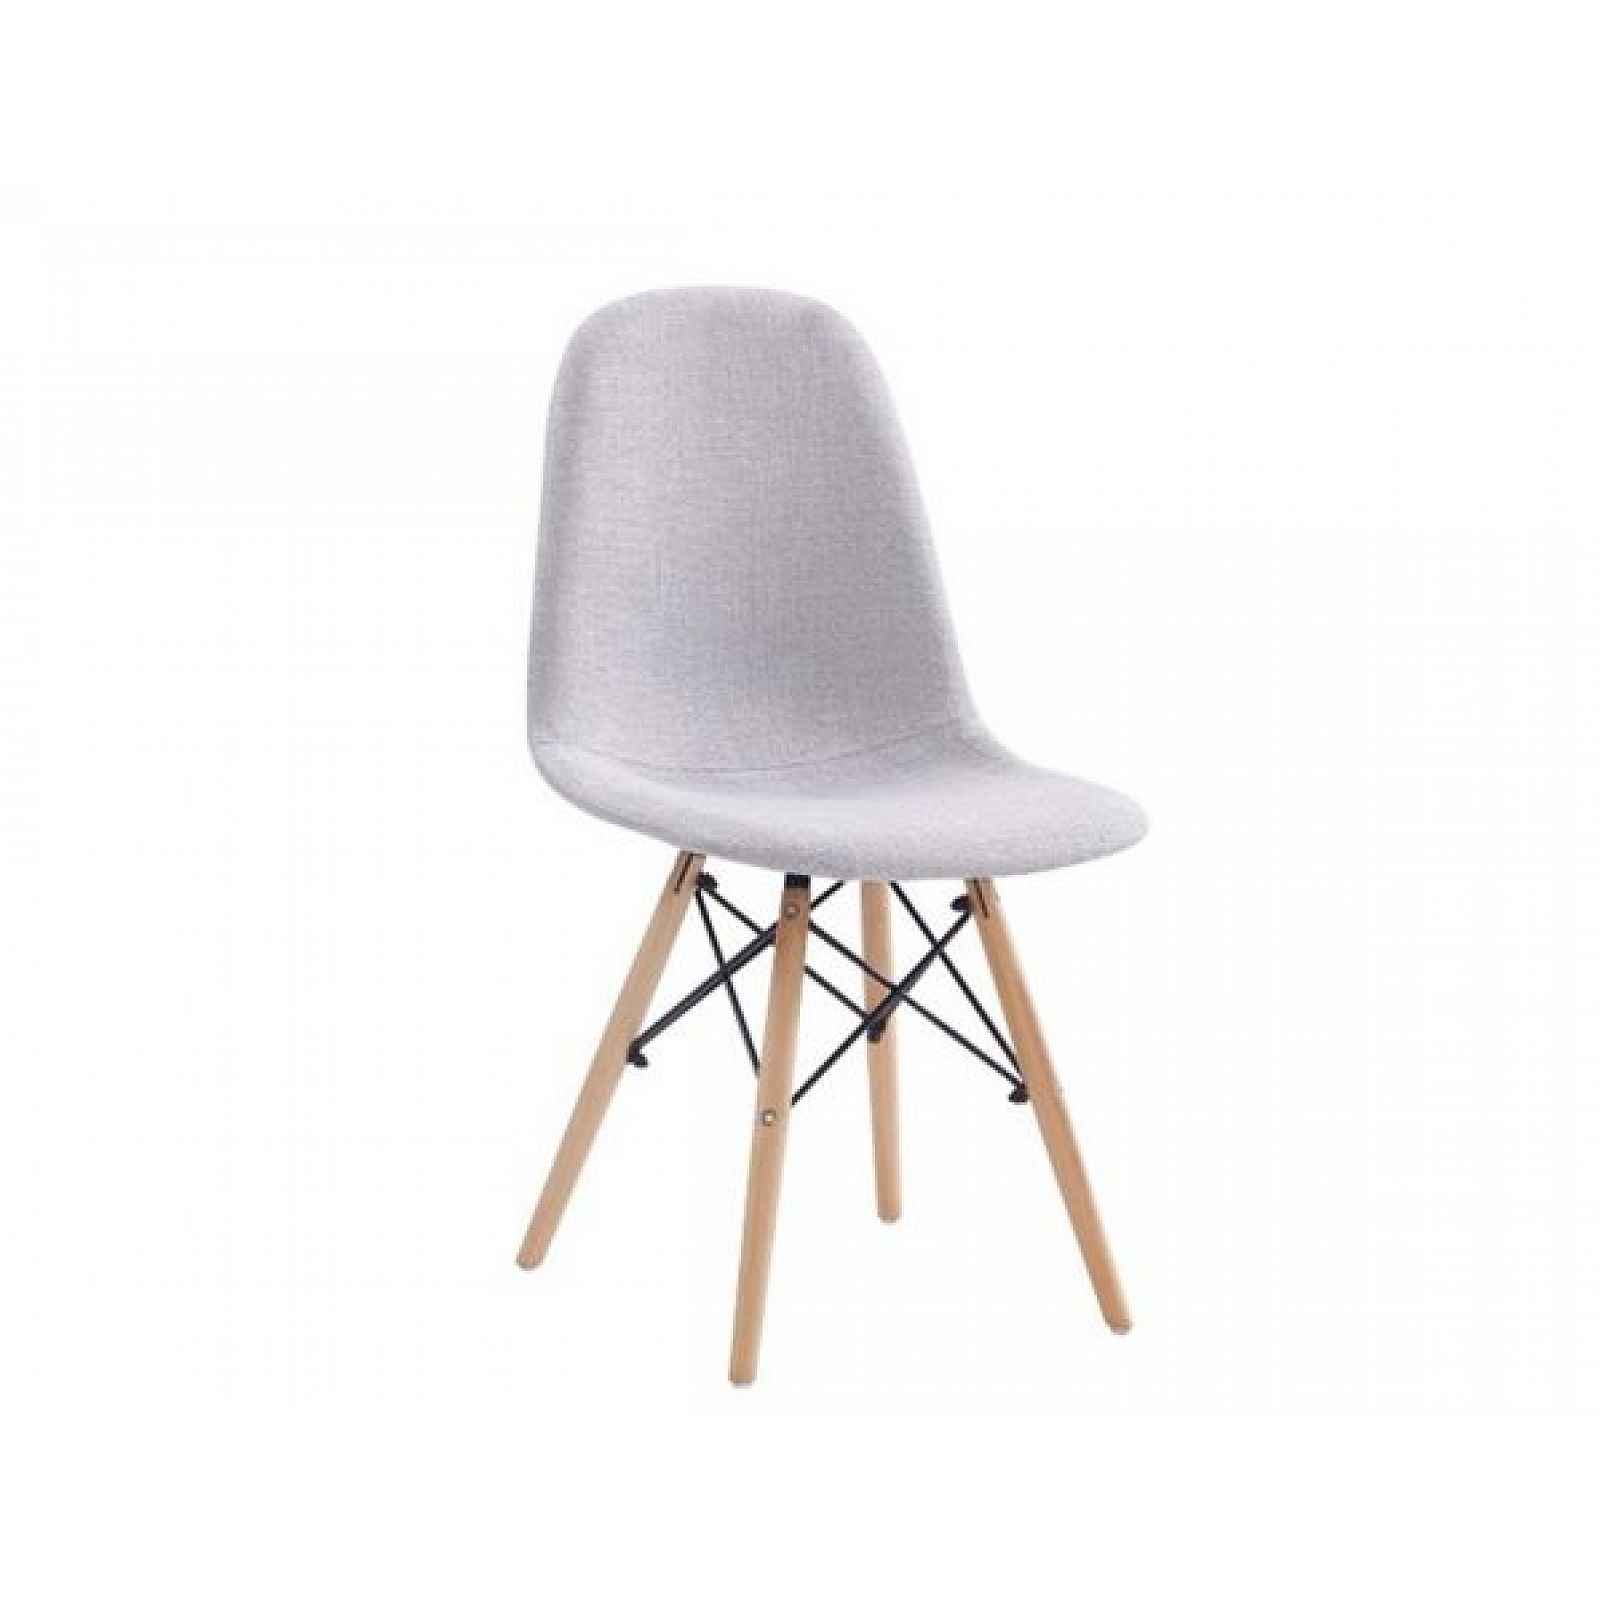 Jídelní židle Peints 2, šedá, buk